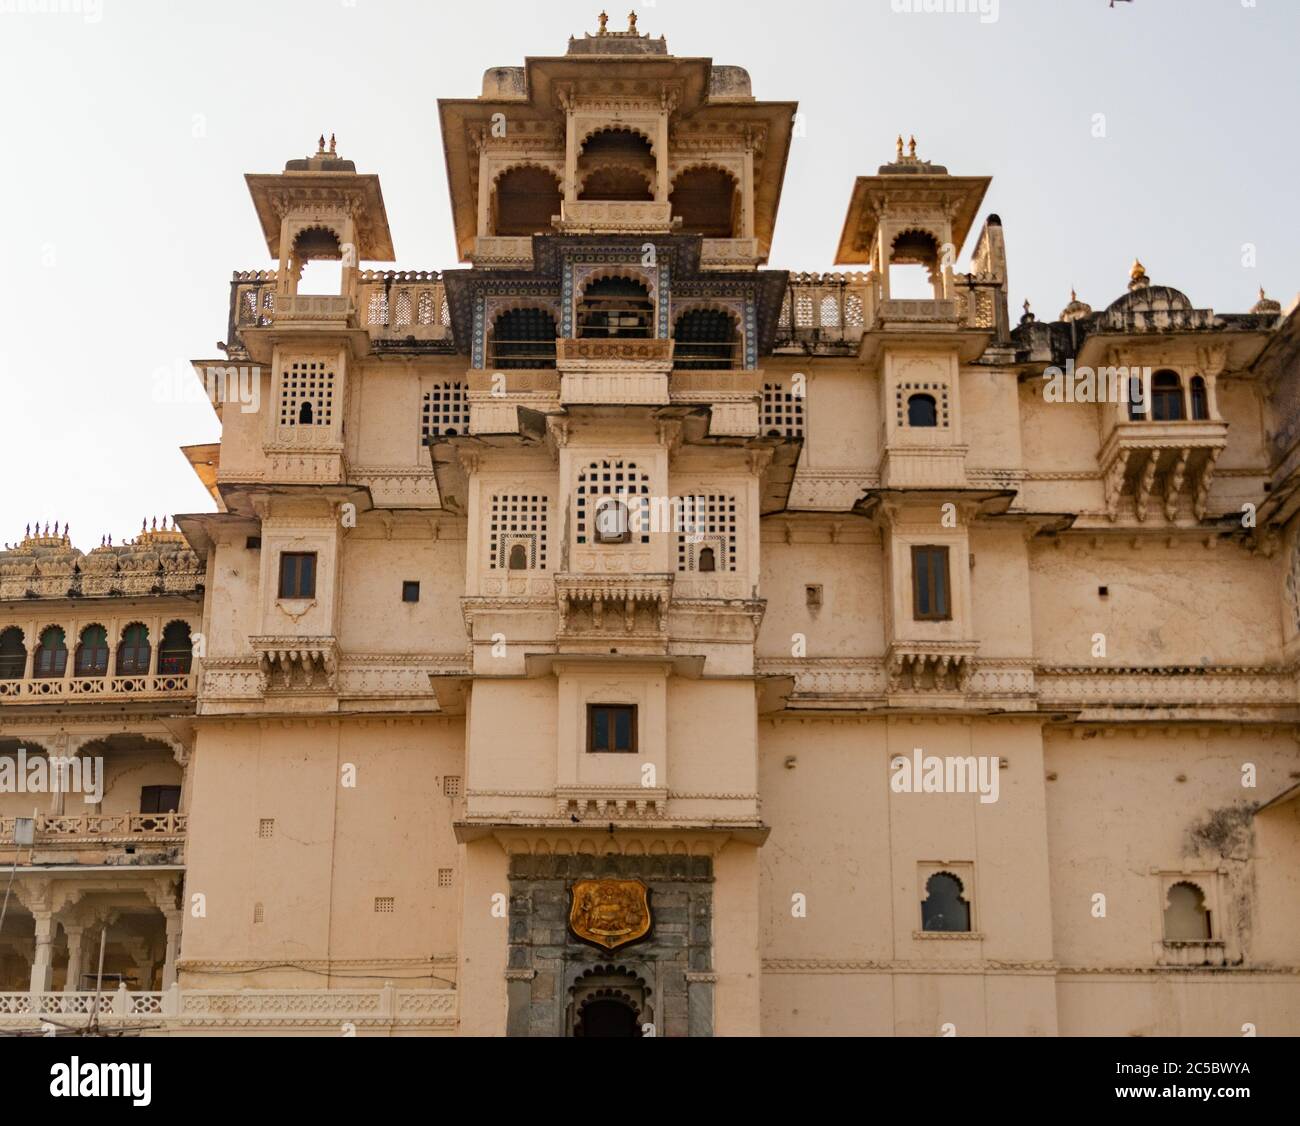 Entrada principal del Palacio de la Ciudad, Udaipur Rajasthan India. Foto de alta calidad Foto de stock